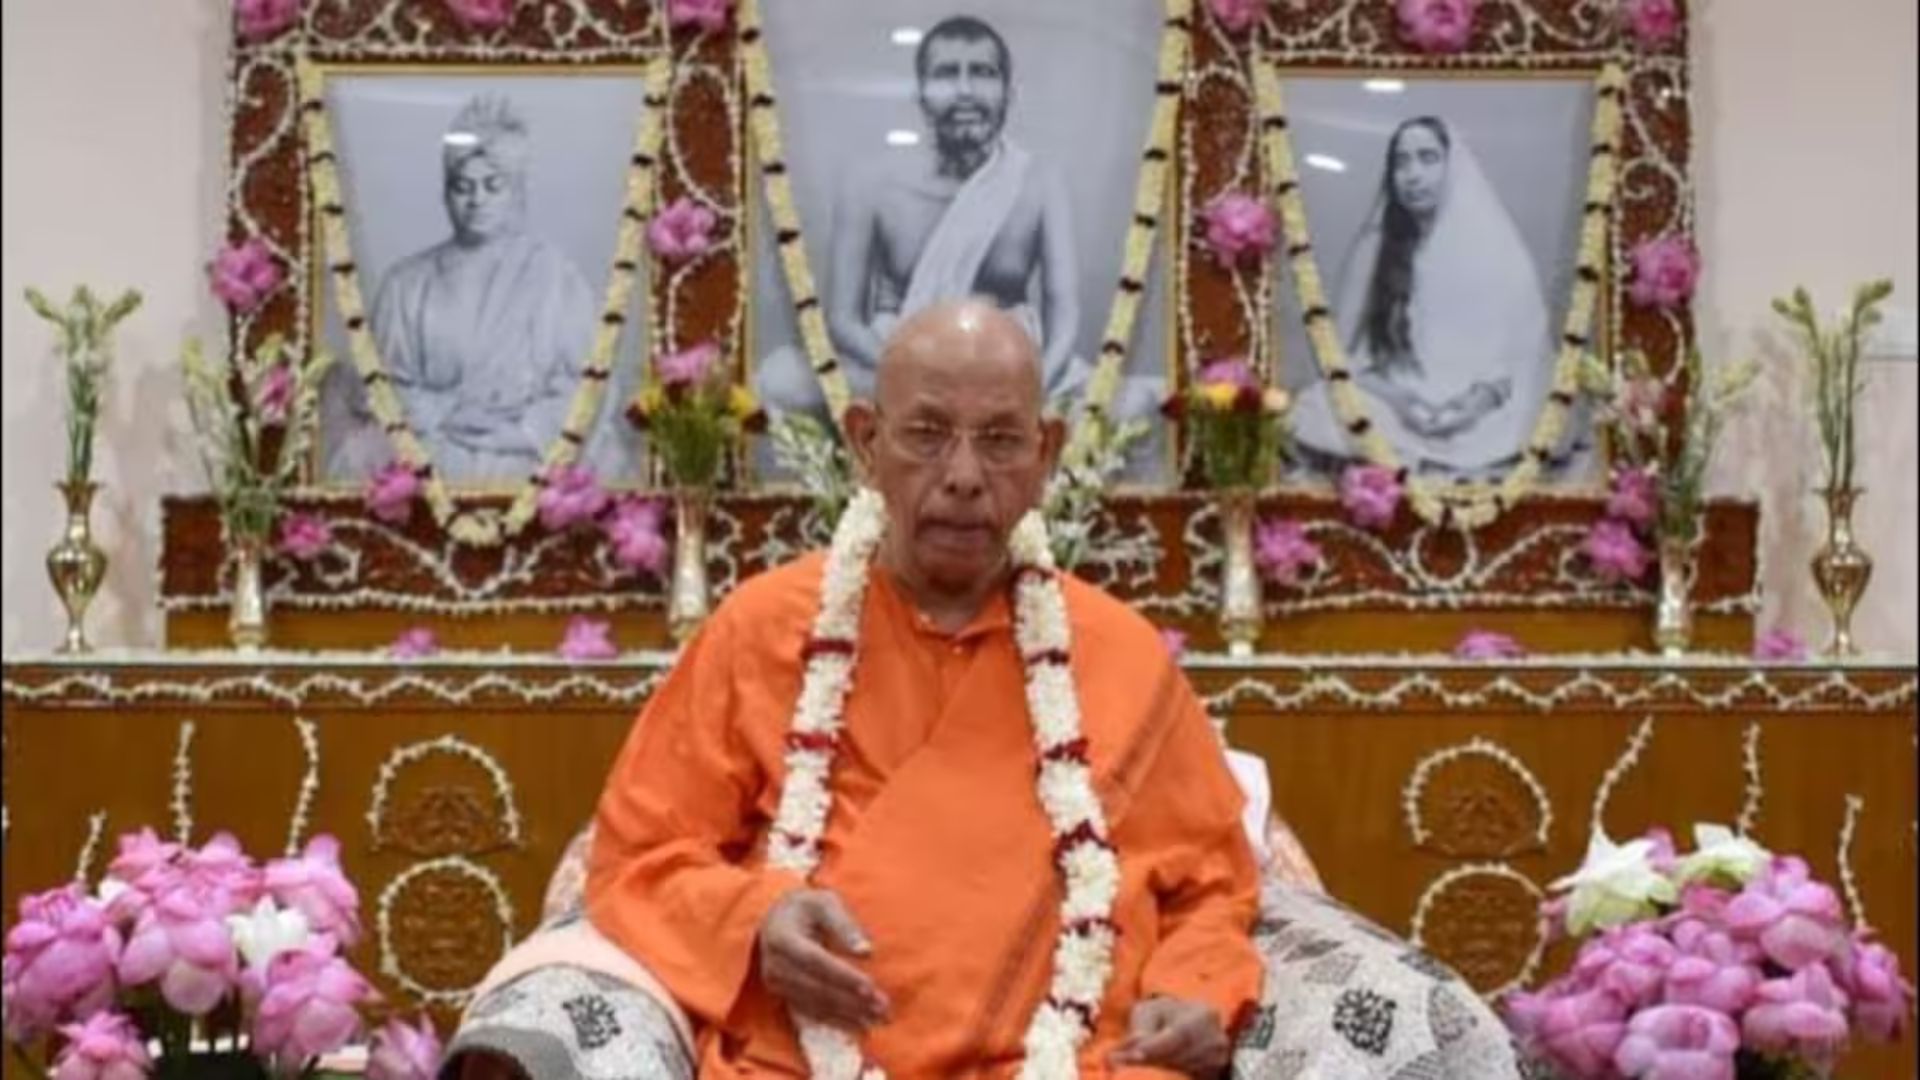 Ramakrishna Mission Chief Swami Smaranananda Maharaj Passes Away at 95